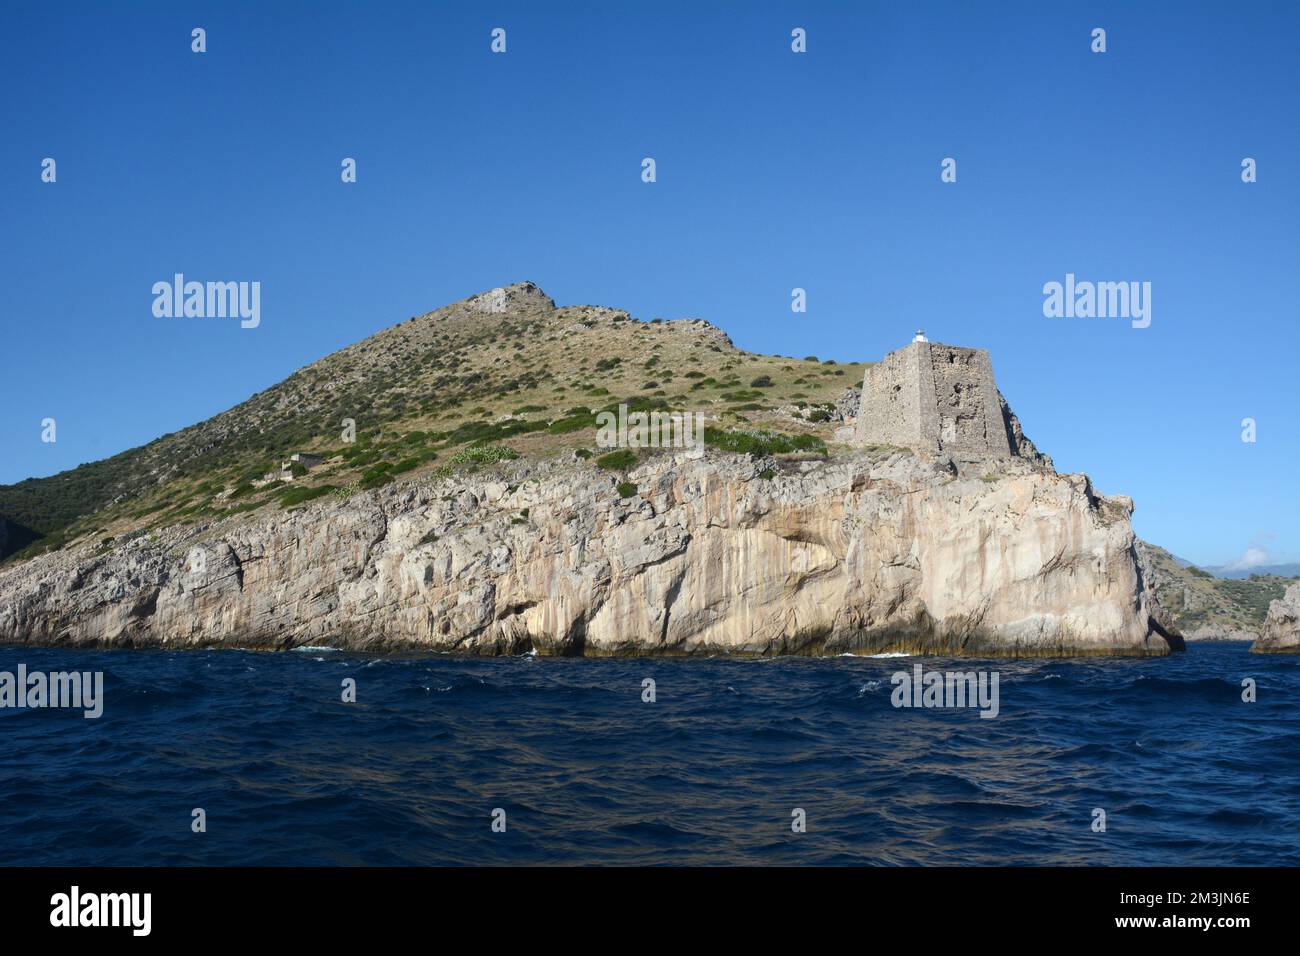 L'antica torre di guardia in pietra di Punta Campanella, sulla punta sud-occidentale della Penisola Sorrentina, sulla Costiera Amalfitana, Campania, Italia. Foto Stock